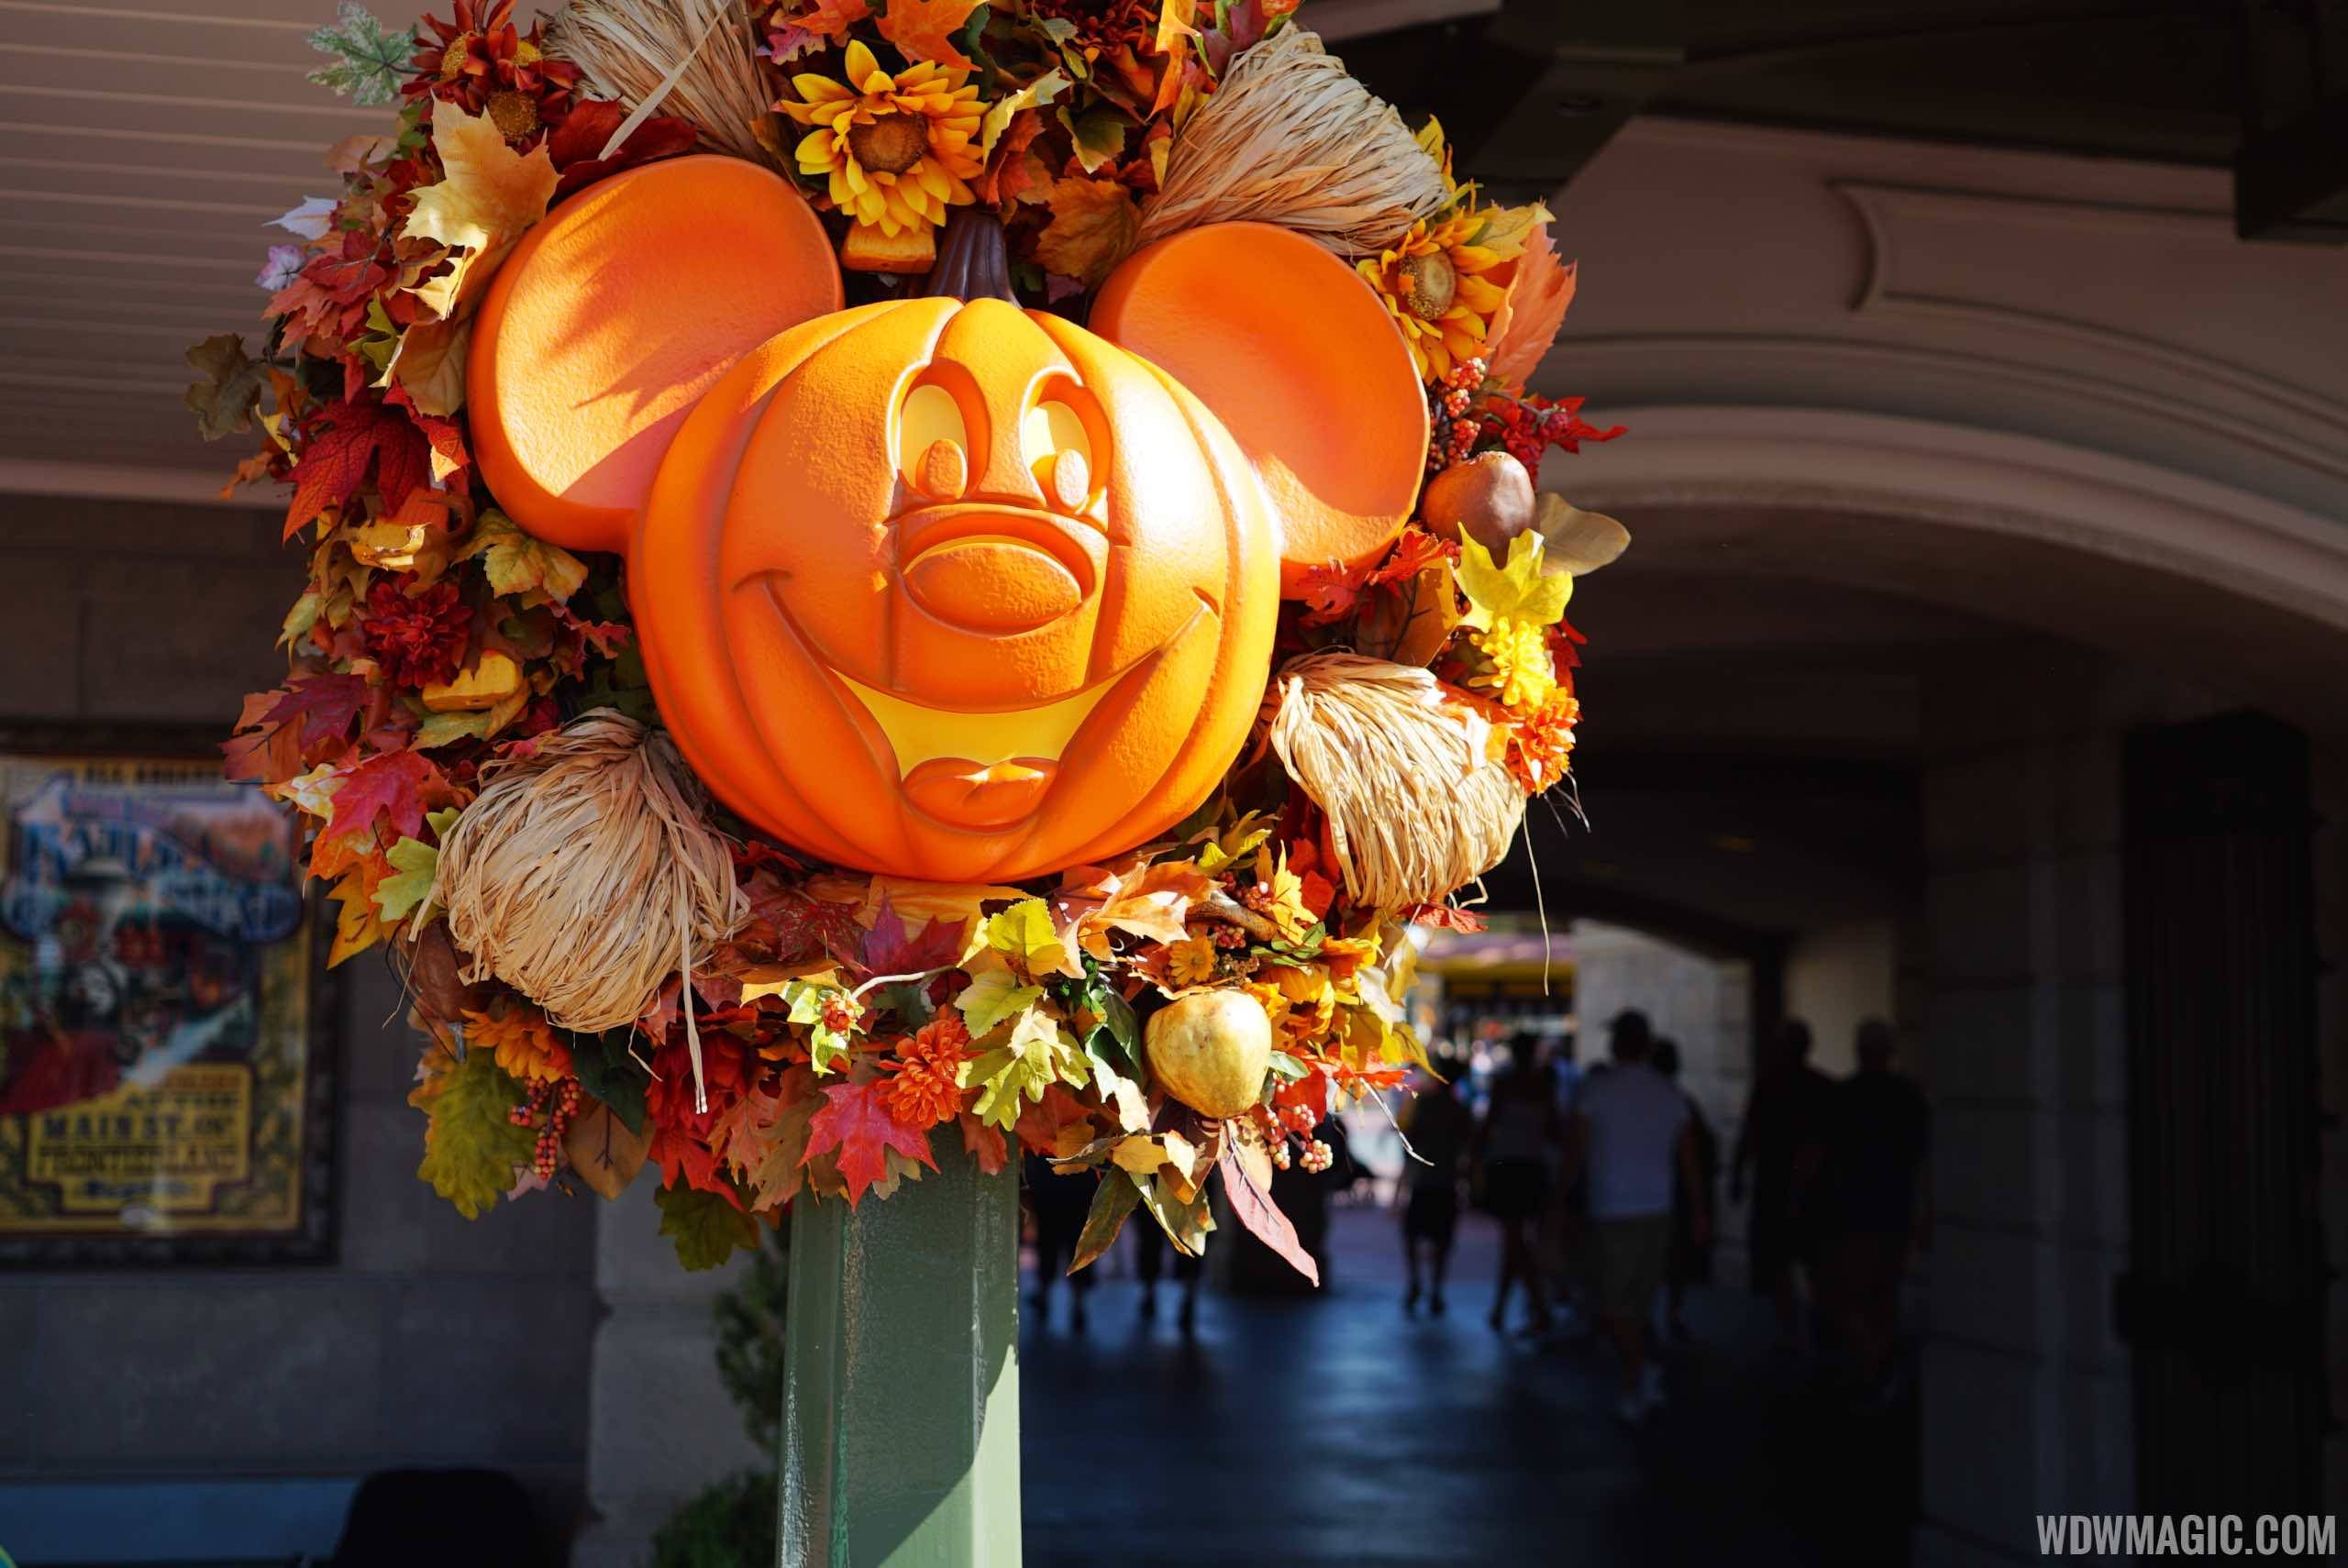 Magic Kingdom's fall Halloween decorations 2015